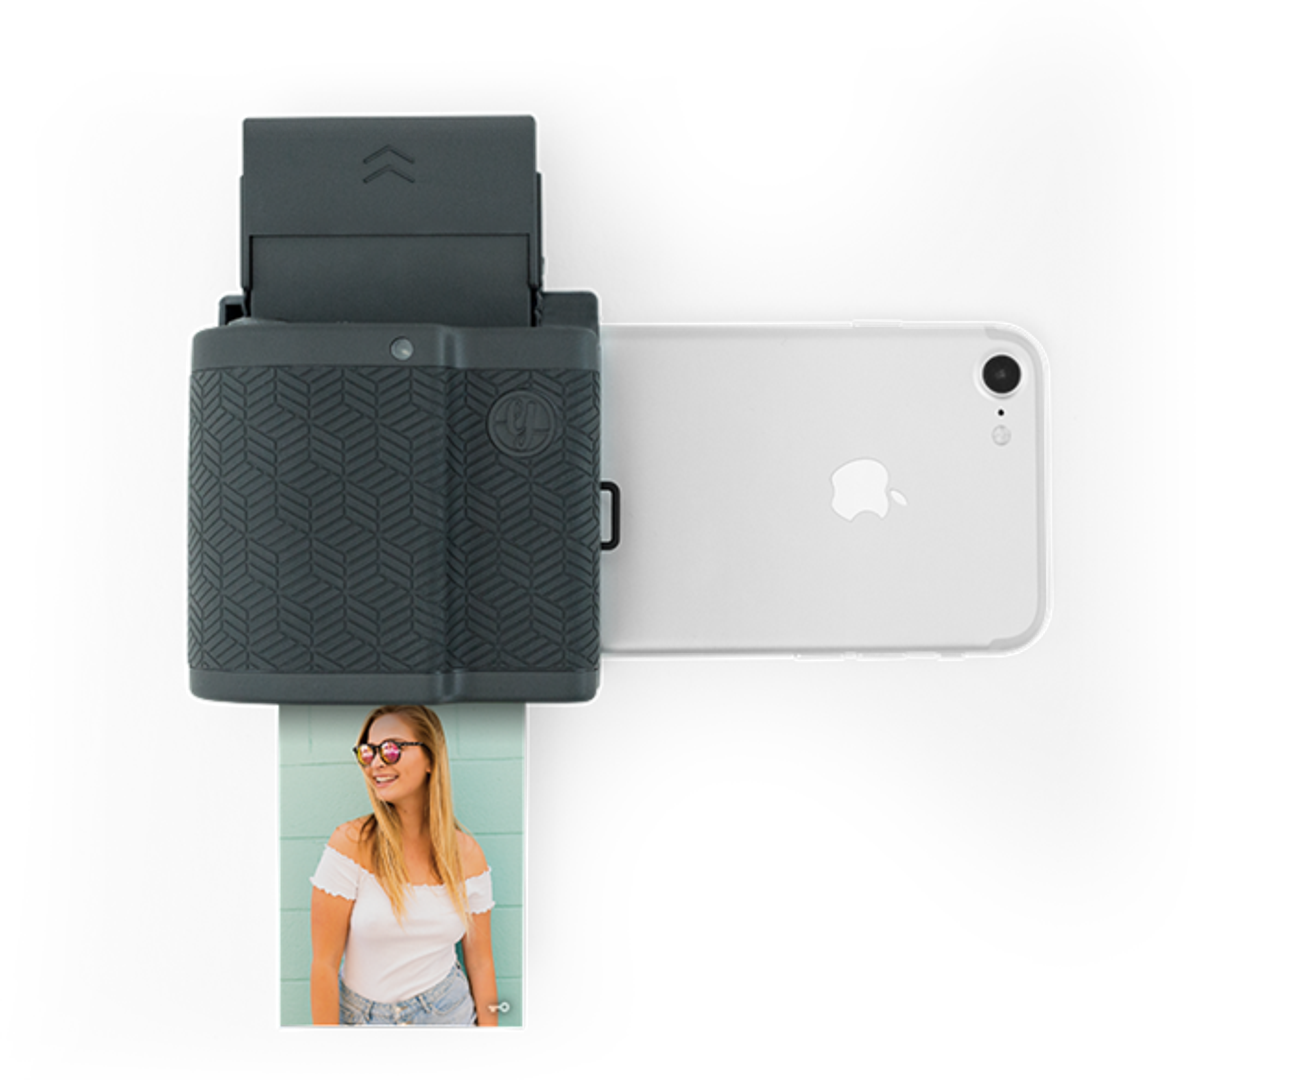 Obožavate fotografirati svojim mobitelom i želja vam je da fotografije ne gledate samo na ekranu? Svakako razmislite o Prynt Pocketu koji fotografije snimljene iPhoneom odmah isprinta. Napomena: Vrijedi za iPhone6 i novije uređaje. Cijena je 150 dolara.